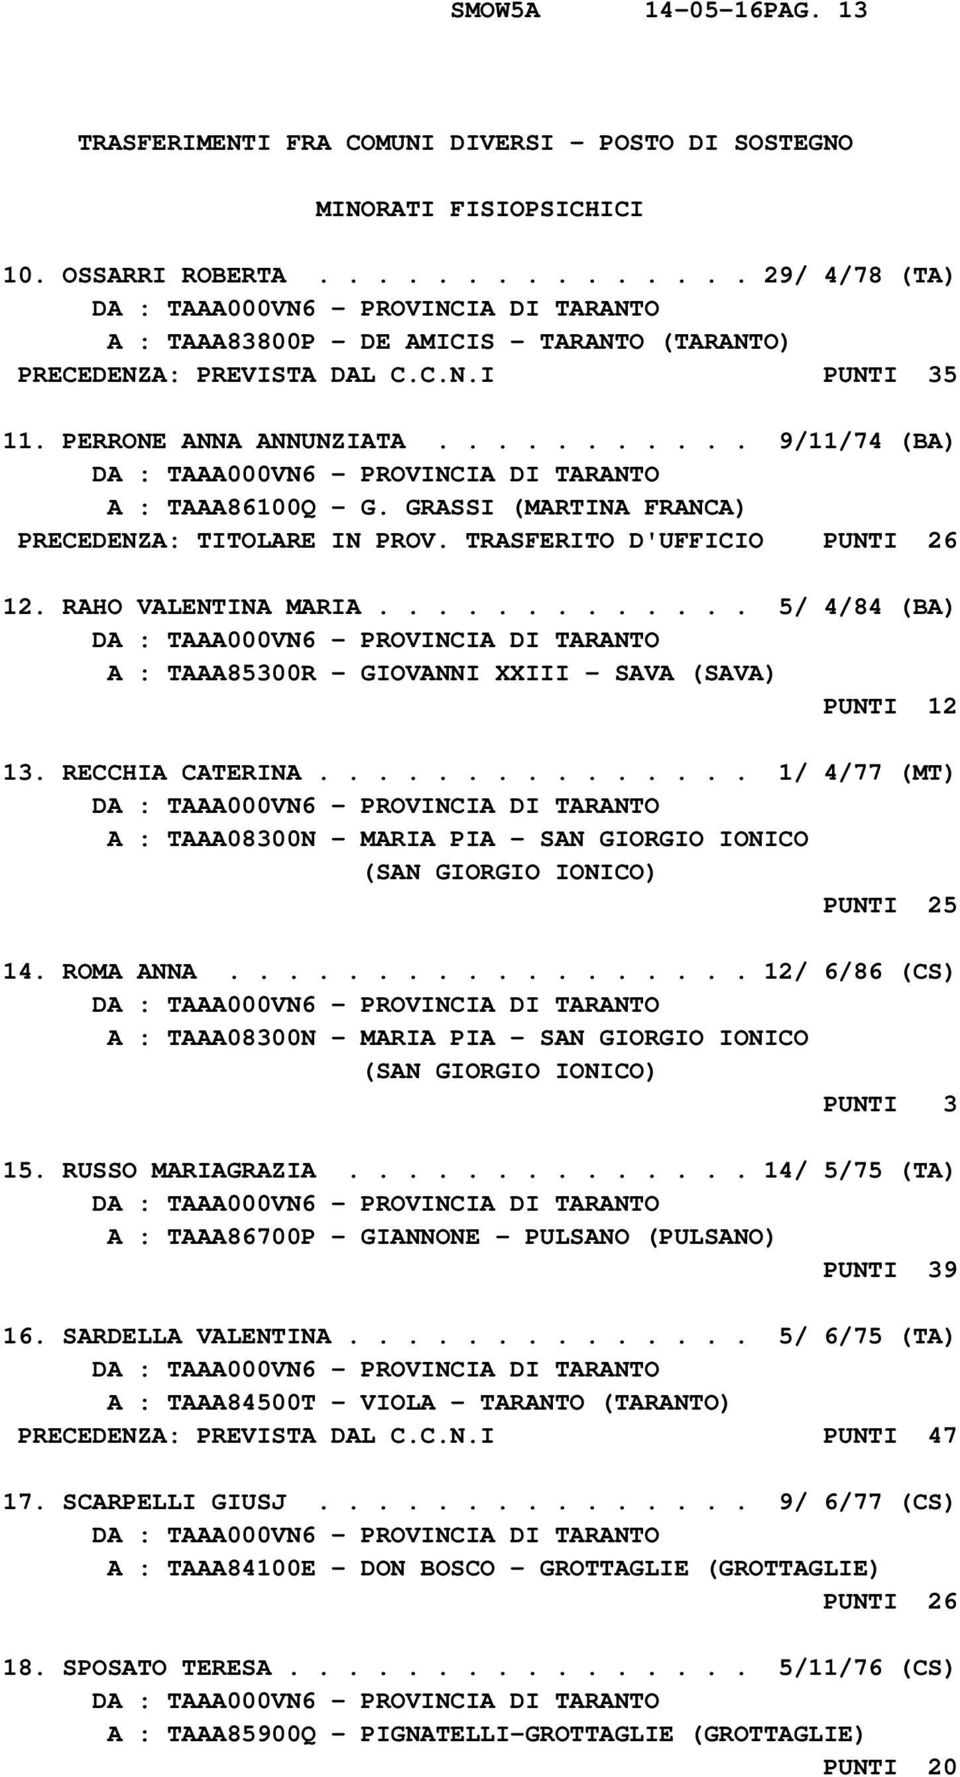 GRASSI PRECEDENZA: TITOLARE IN PROV. TRASFERITO D'UFFICIO PUNTI 26 12. RAHO VALENTINA MARIA............. 5/ 4/84 (BA) A : TAAA85300R - GIOVANNI XXIII - SAVA (SAVA) PUNTI 12 13. RECCHIA CATERINA.